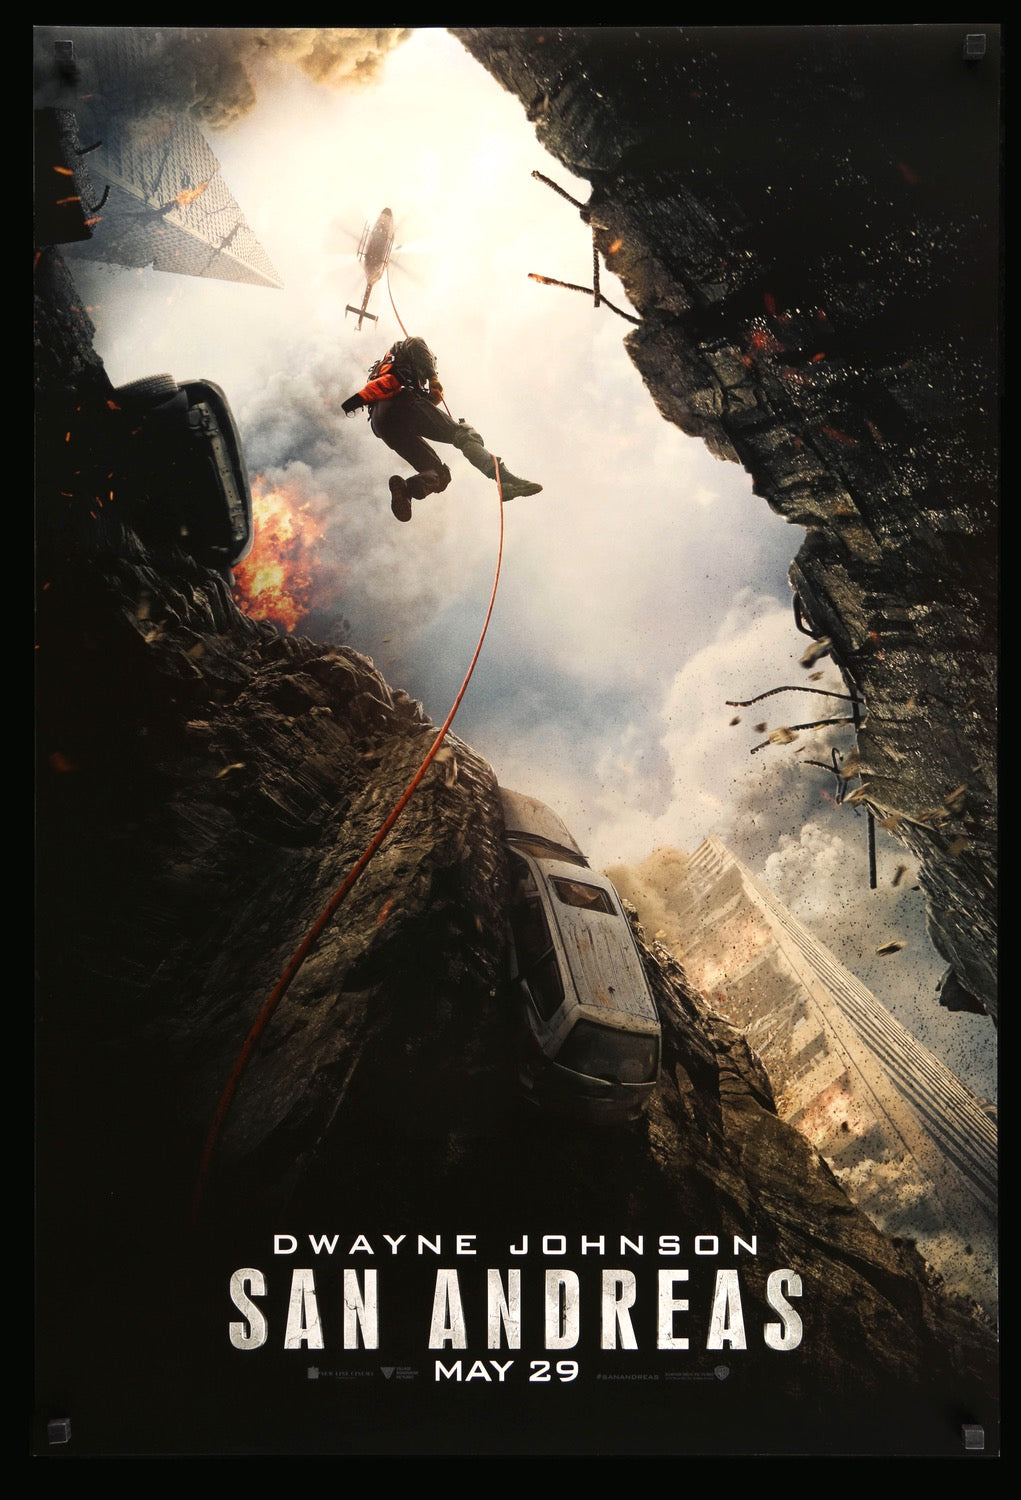 San Andreas (2015) original movie poster for sale at Original Film Art